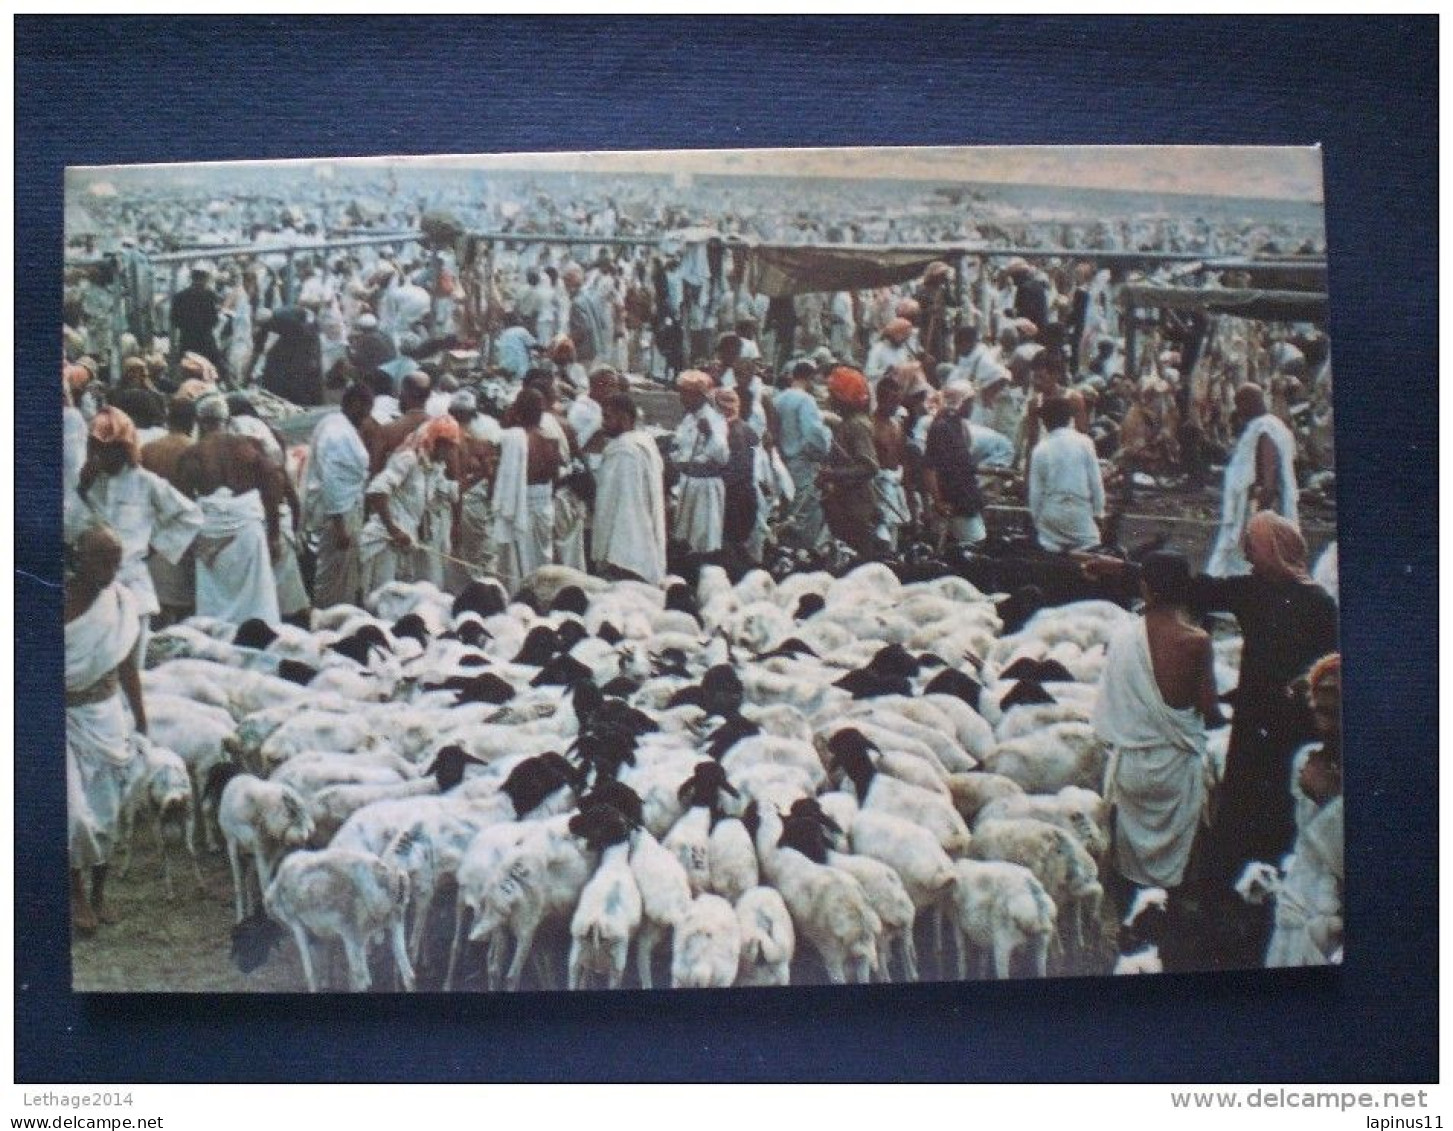 POSTCARD SAUDI ARABIA 1960 THE SACRIFICE AT MINA - Saudi Arabia